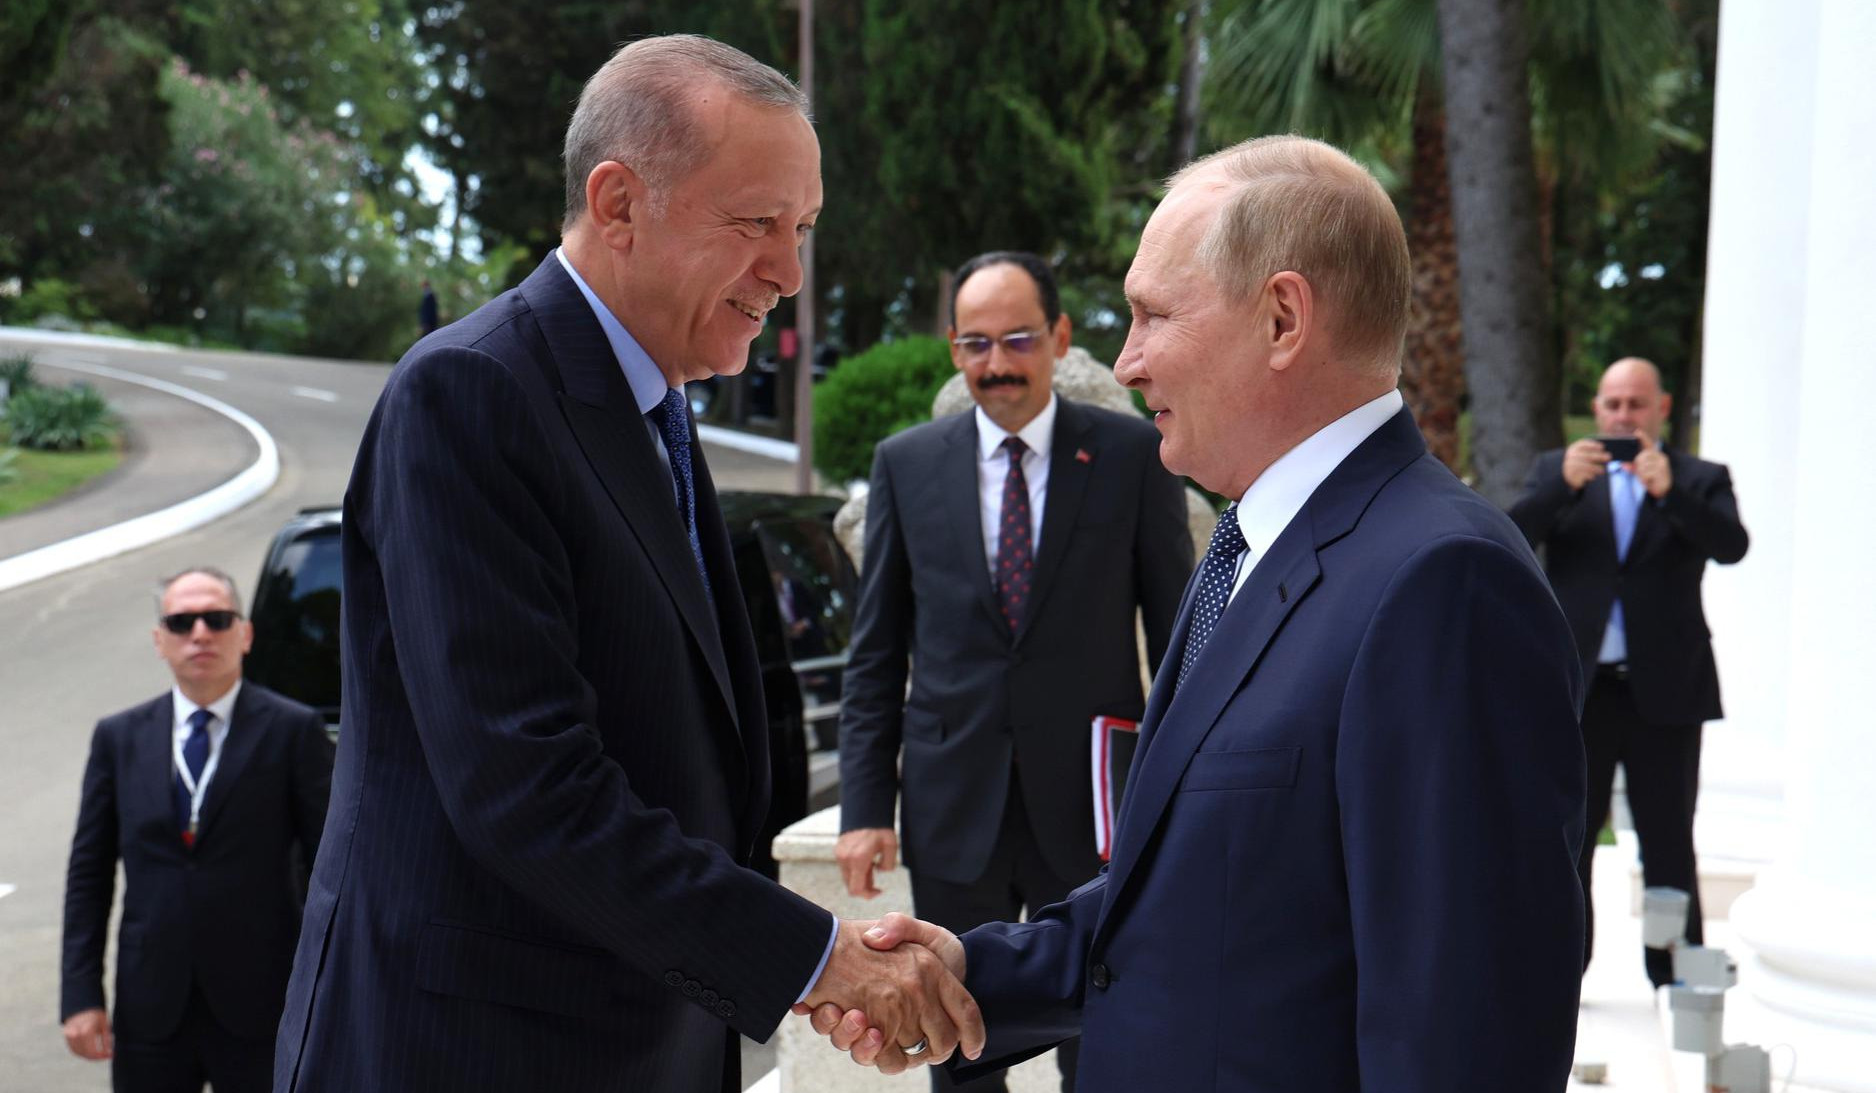 Запад обеспокоен углублением сотрудничества между Россией и Турцией: Financial Times